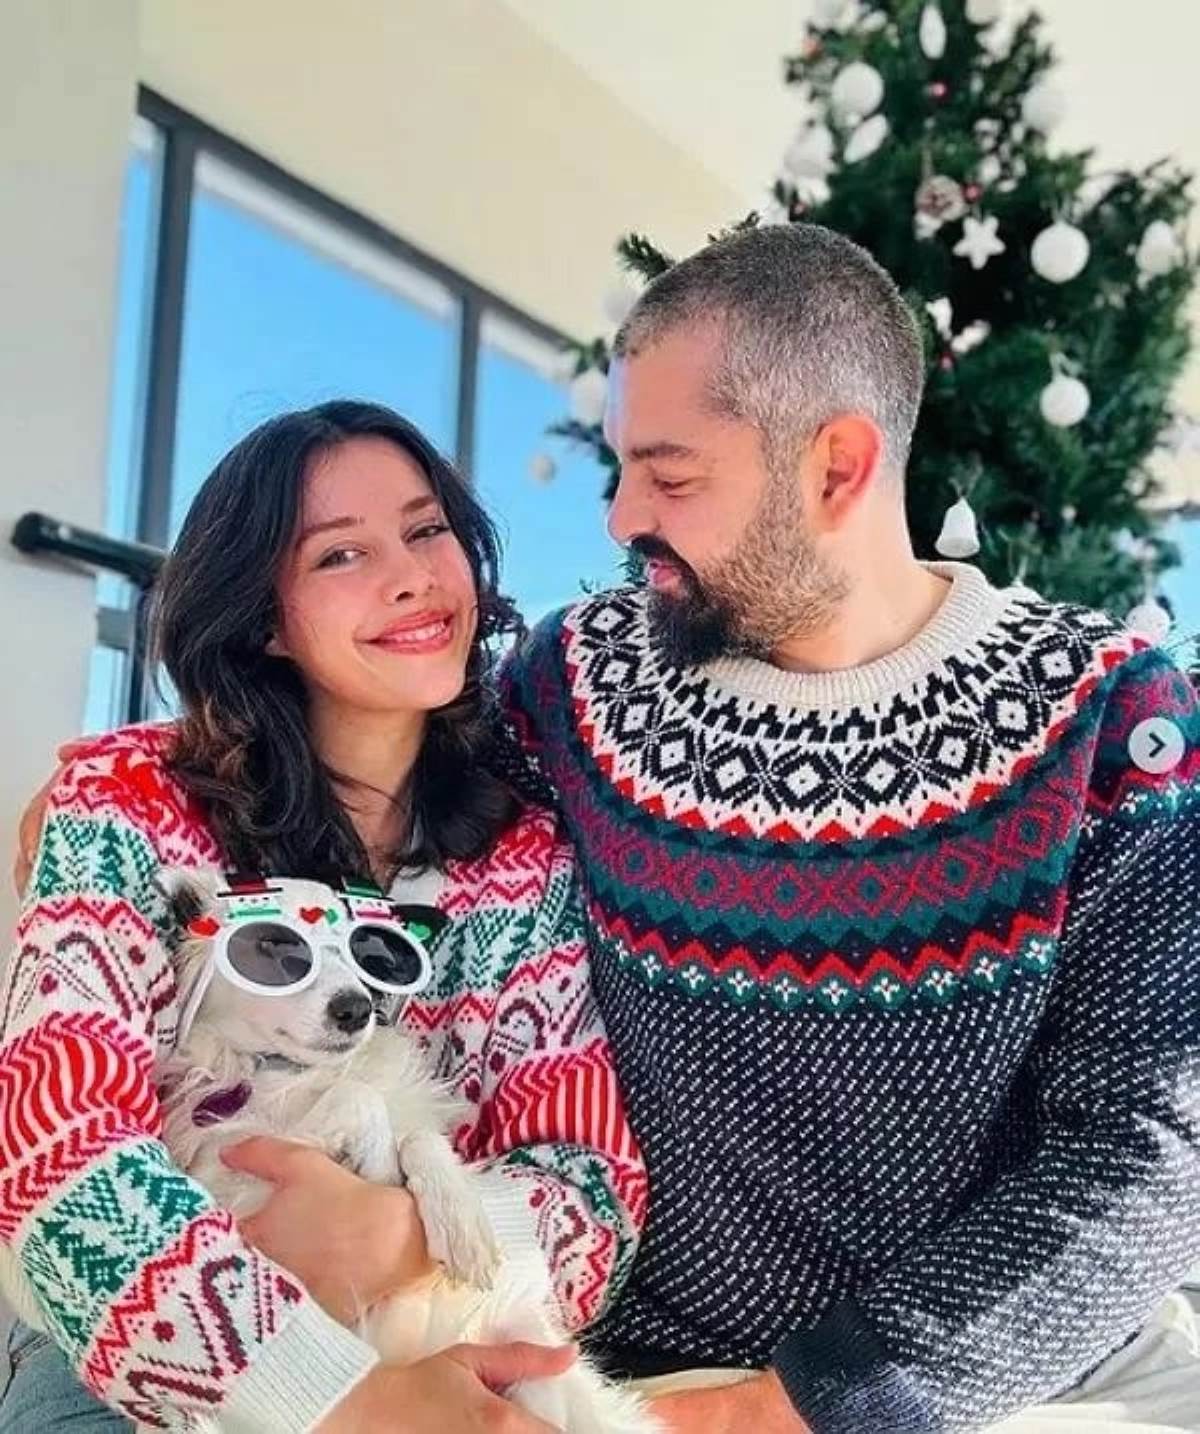 Fenomen Ecem Taşer, eşi olmadan tatile gittiği için sosyal medyada hedef alındı